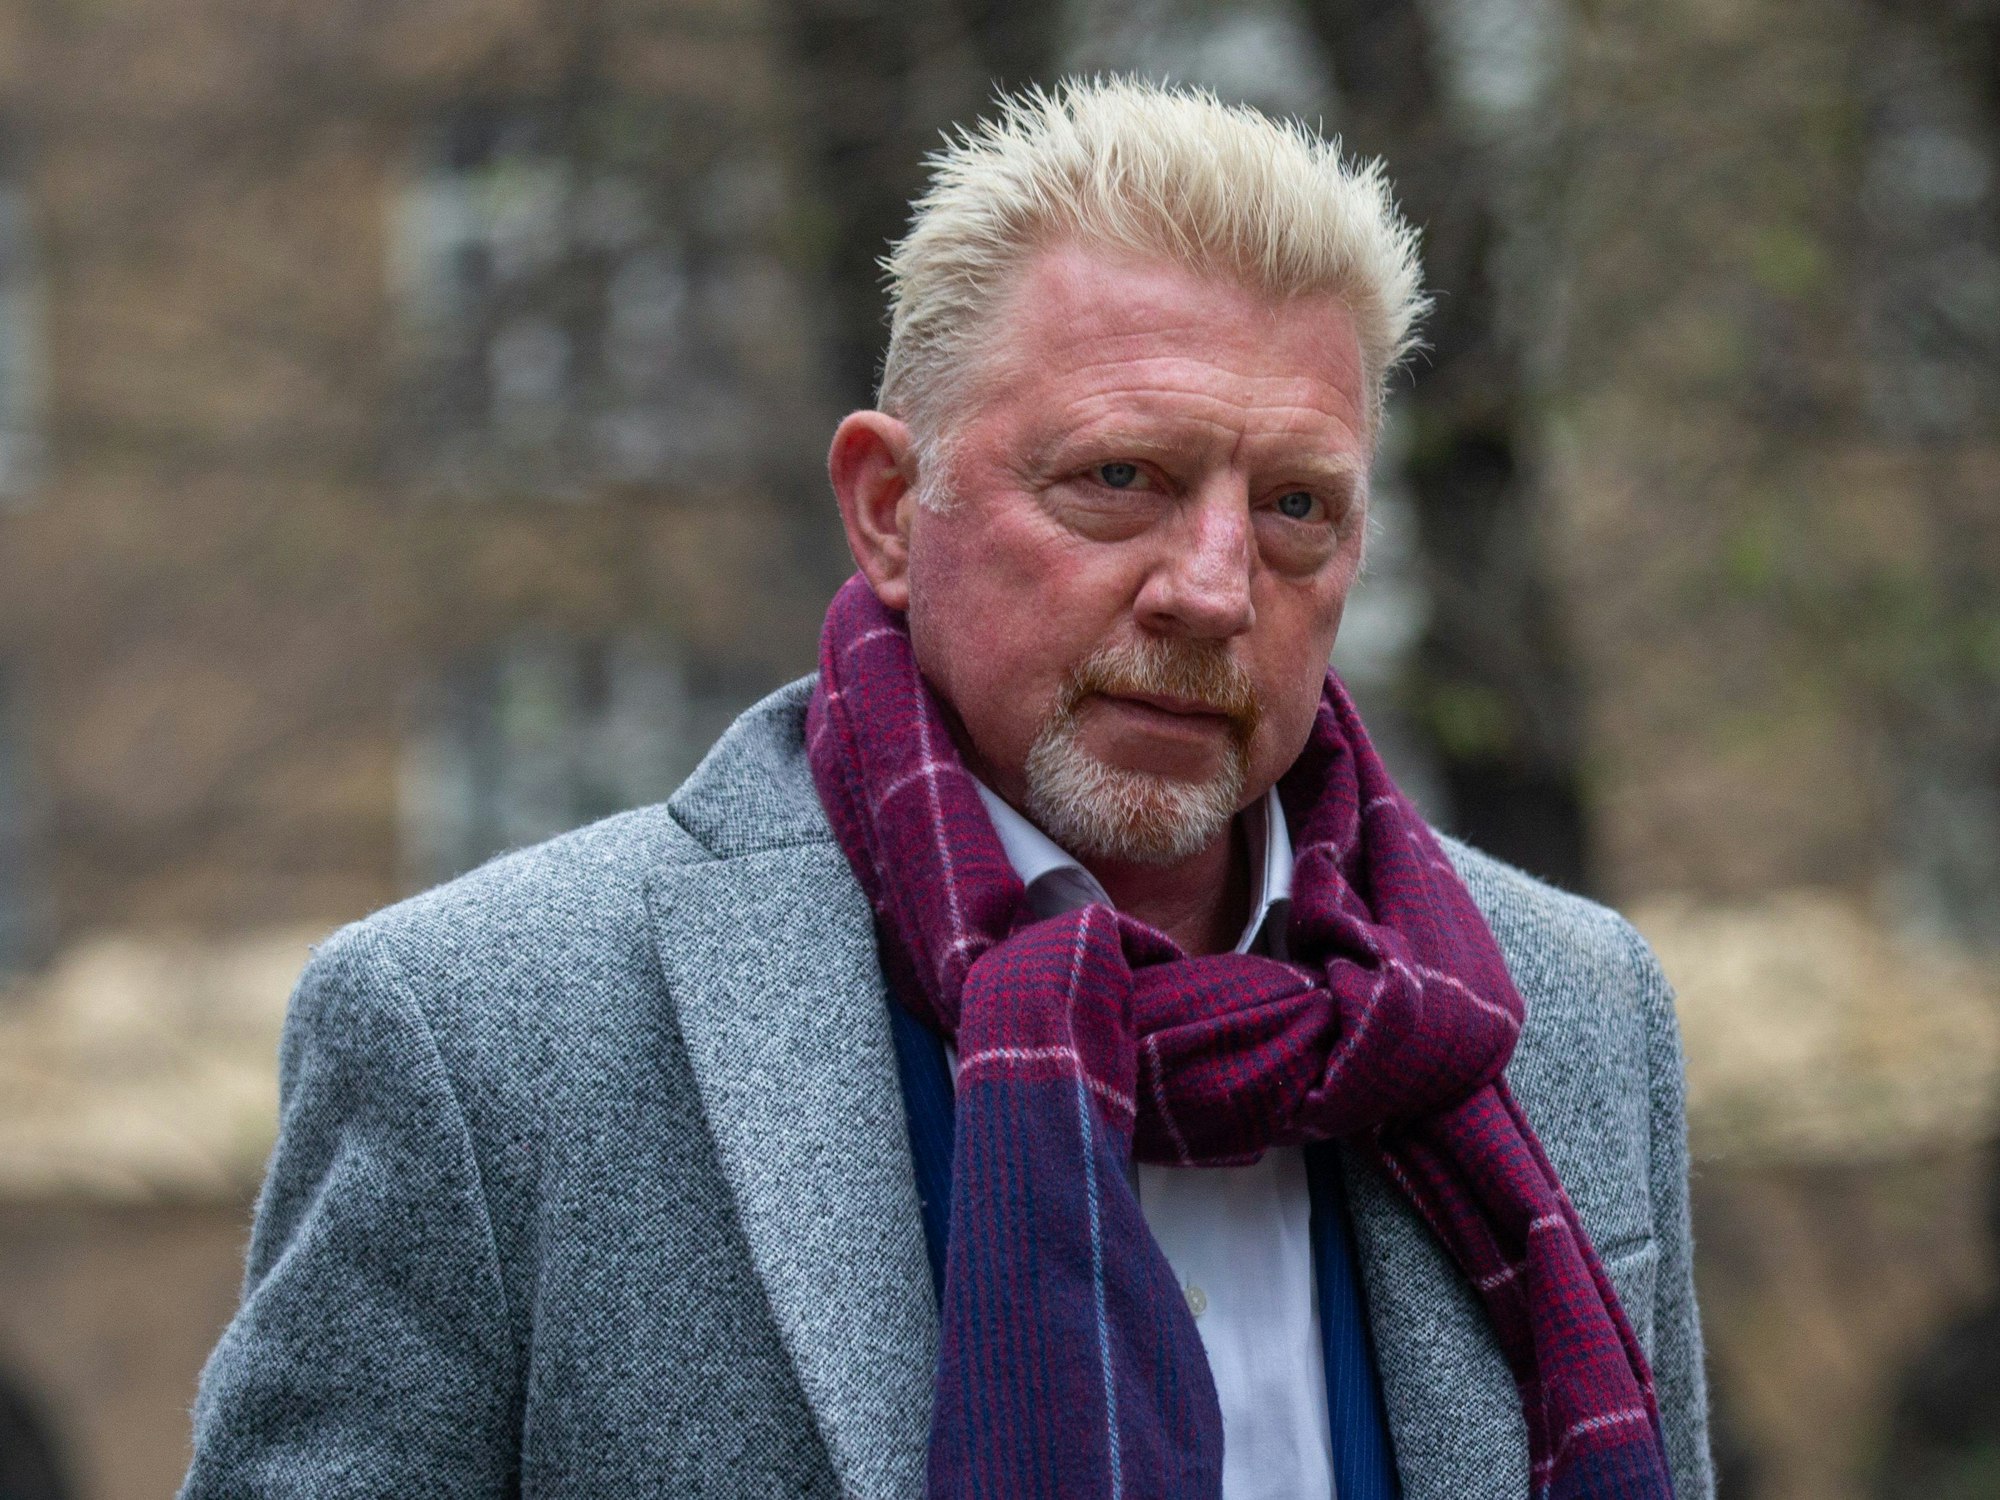 Am 29. April 2022 wurde Boris Becker zu zweieinhalb Jahren Haft verurteilt und musste seine Haftstrafe nach britischem Strafrecht unmittelbar antreten.